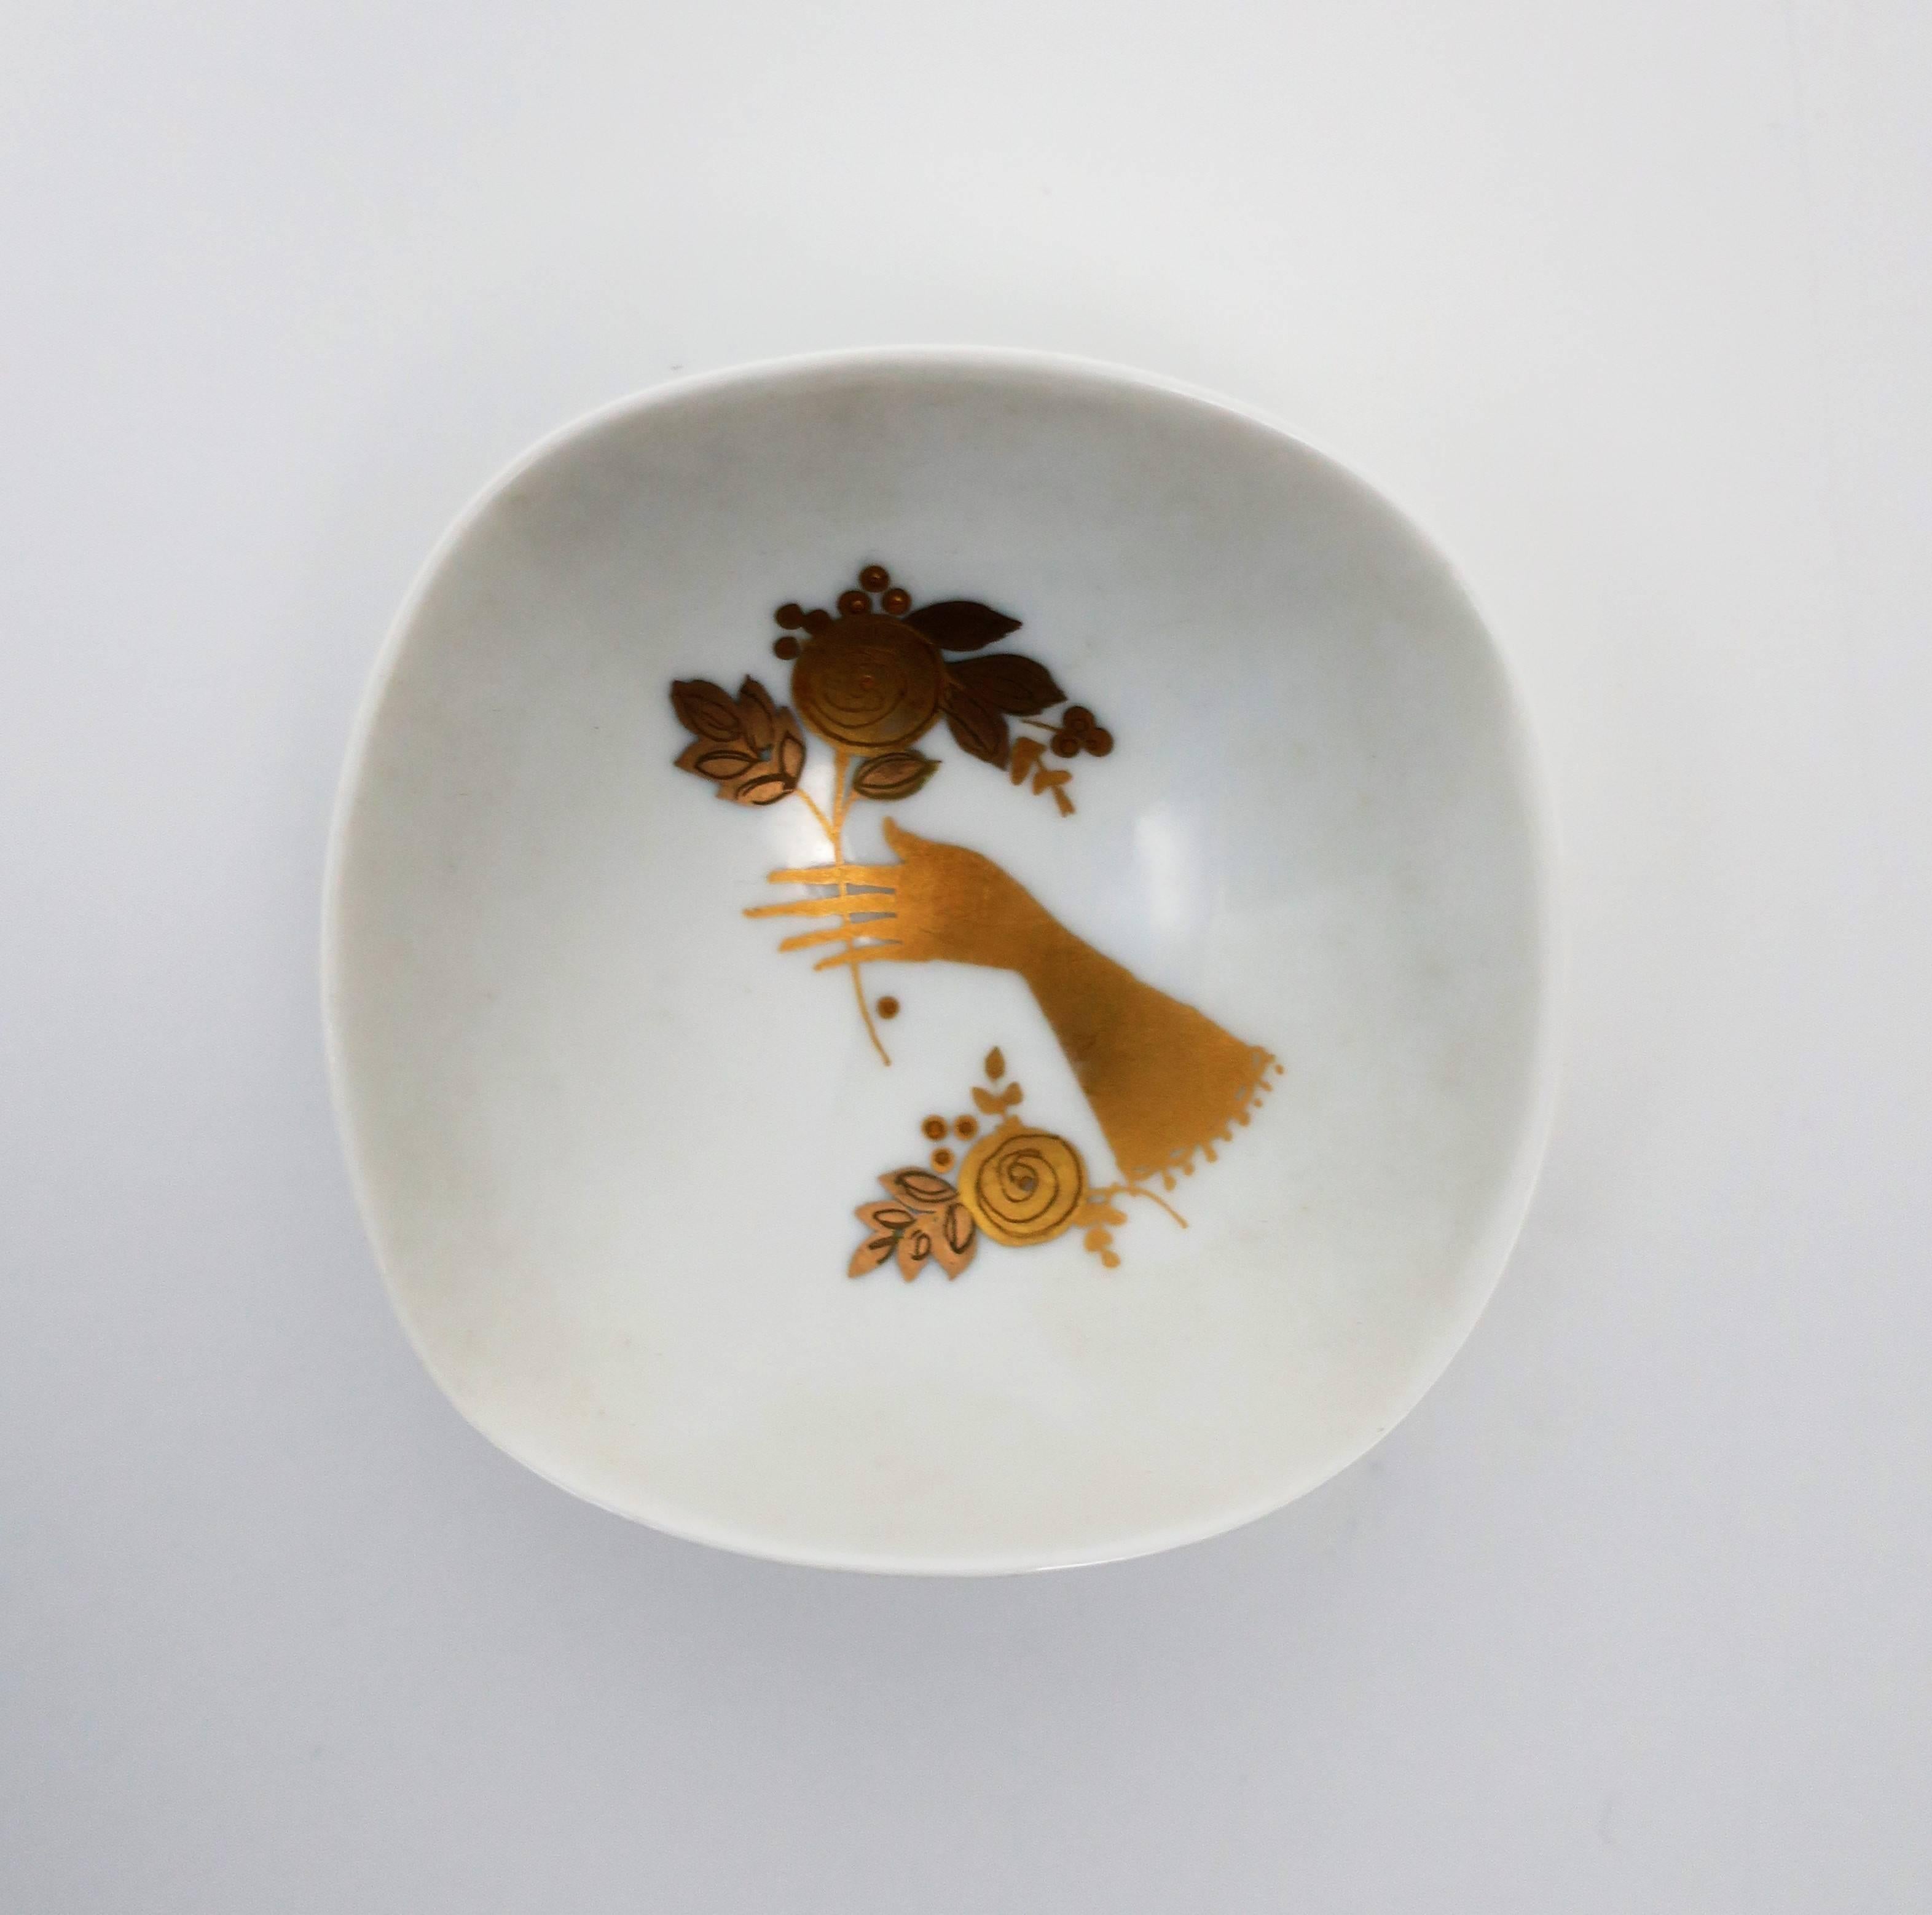 Eine schöne kleine deutsche Schmuckschale aus weißem Porzellan und Gold, circa 20. Jahrhundert, Deutschland. Kleine Schale oder Teller mit einer Hand mit Blumen. Von Rosenthal, Deutschland, wie auf der Unterseite angegeben. Abmessungen: 3